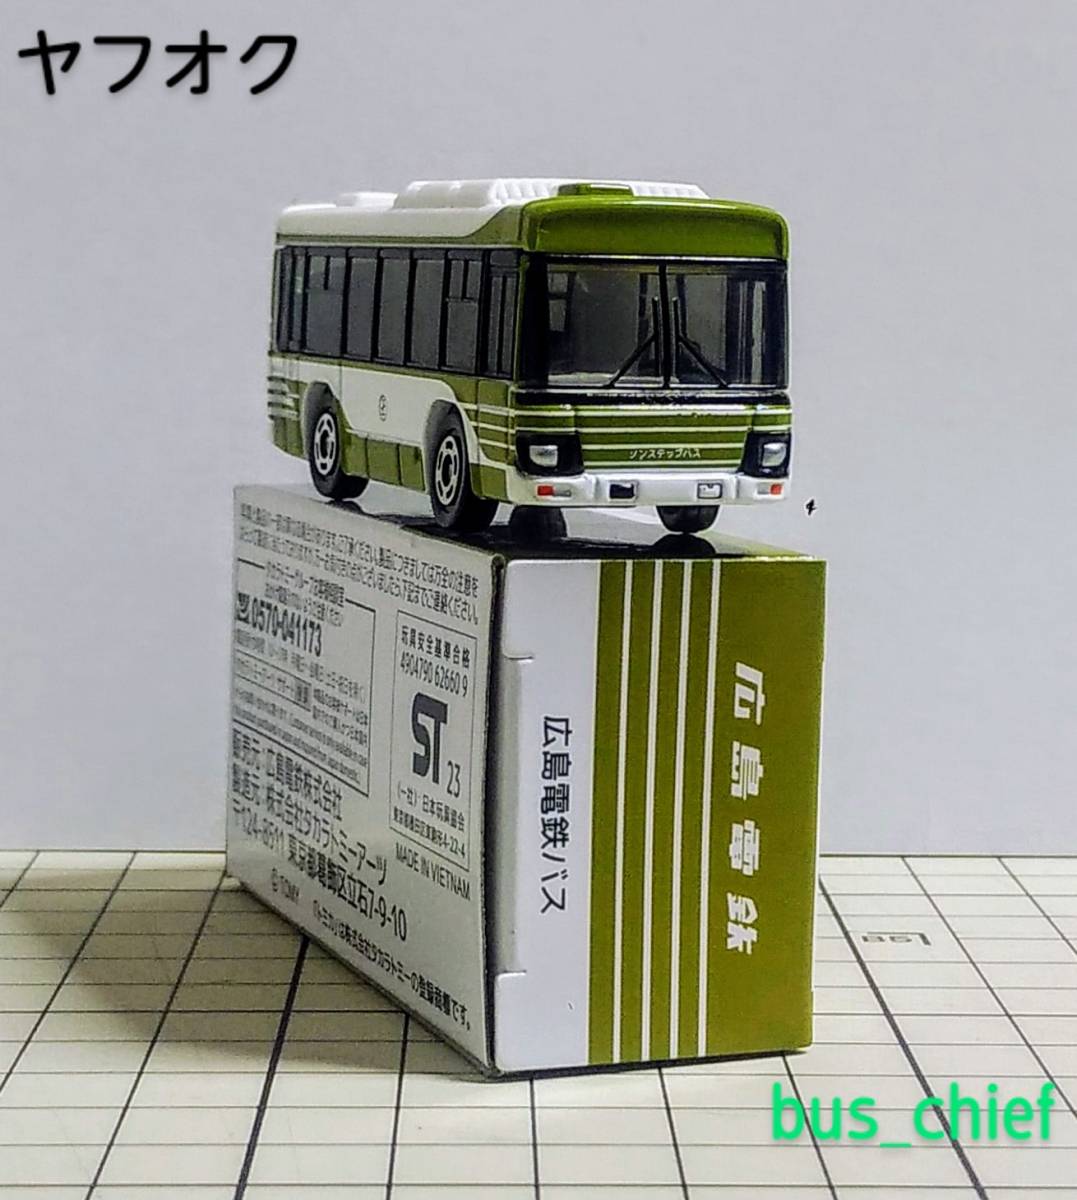 広島電鉄バス【路線バス (いすゞエルガ)】オリジナルトミカ_みほん